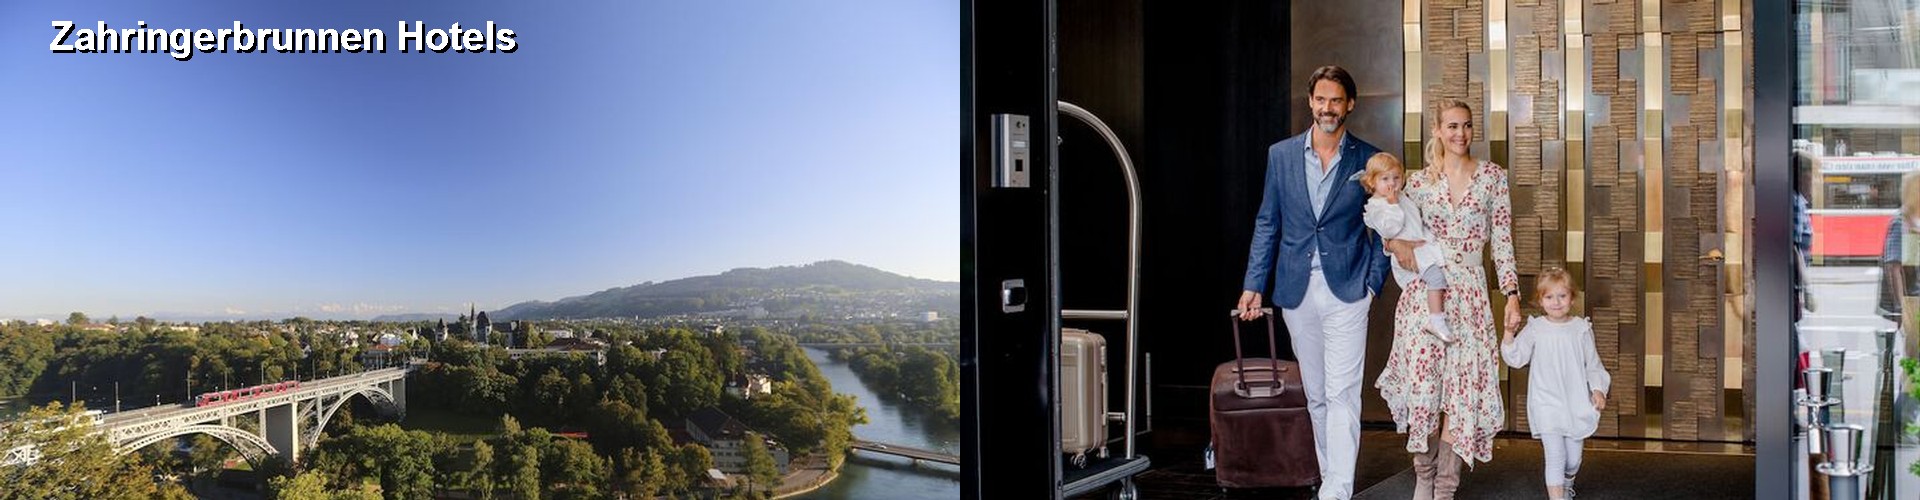 5 Best Hotels near Zahringerbrunnen